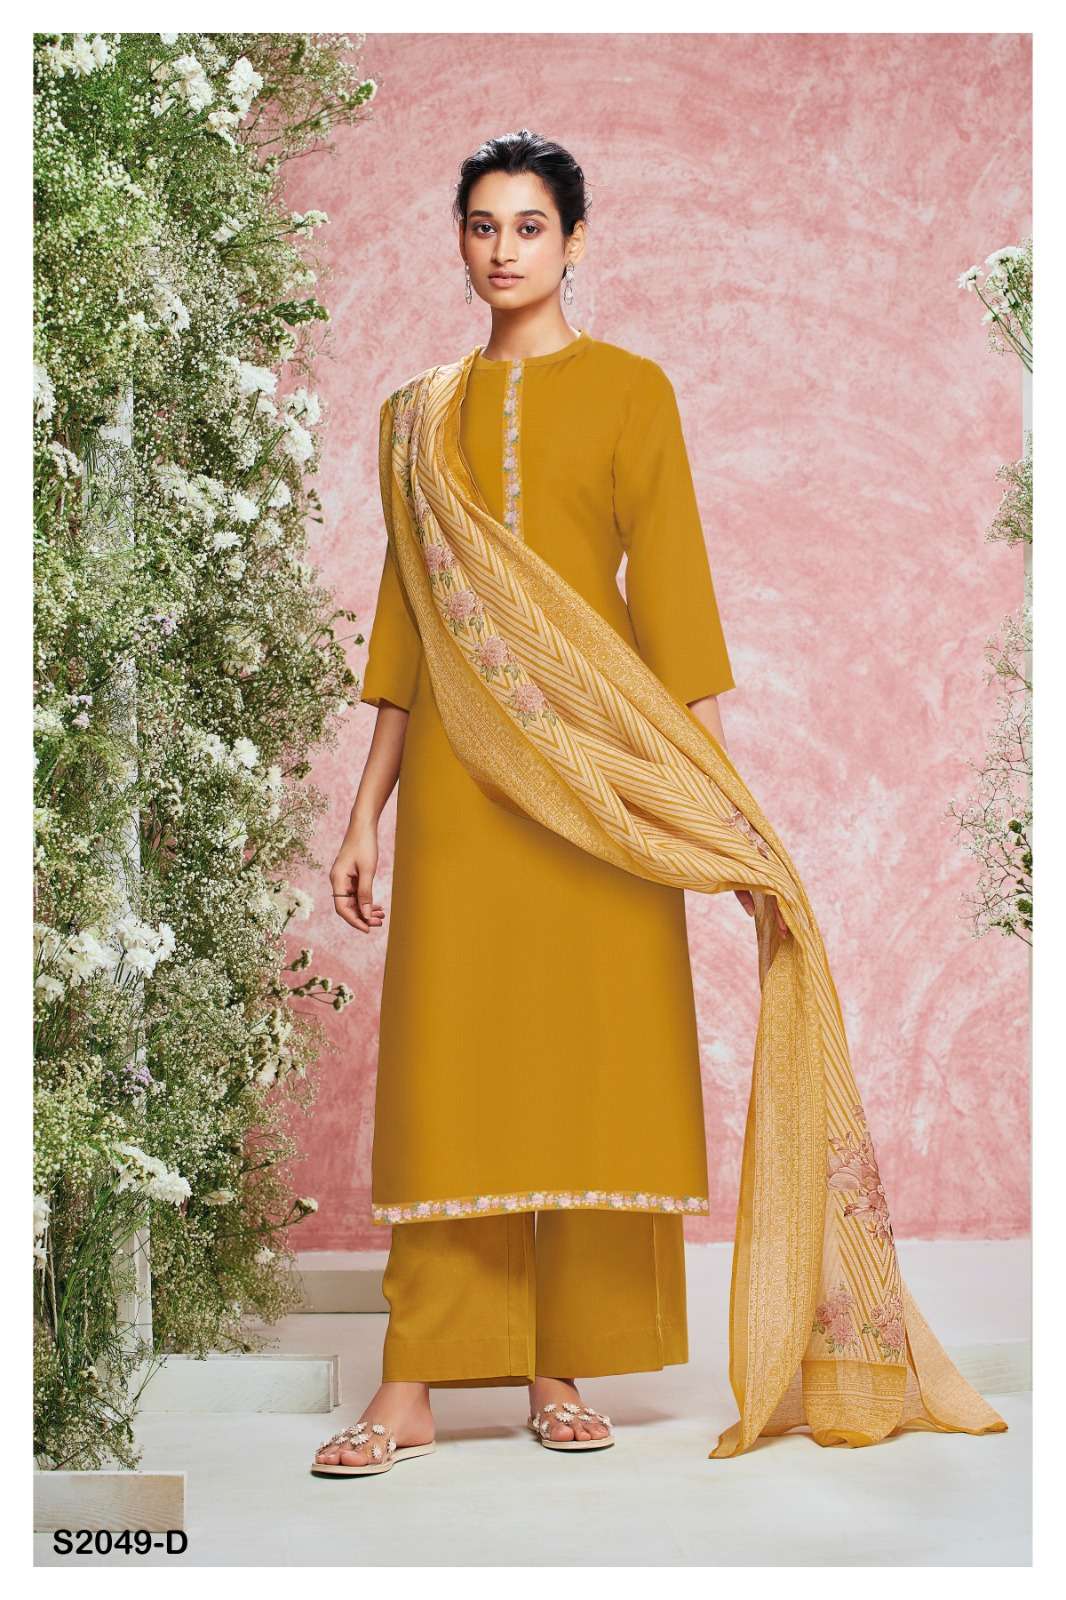 Details more than 182 cotton salwar suit piece latest